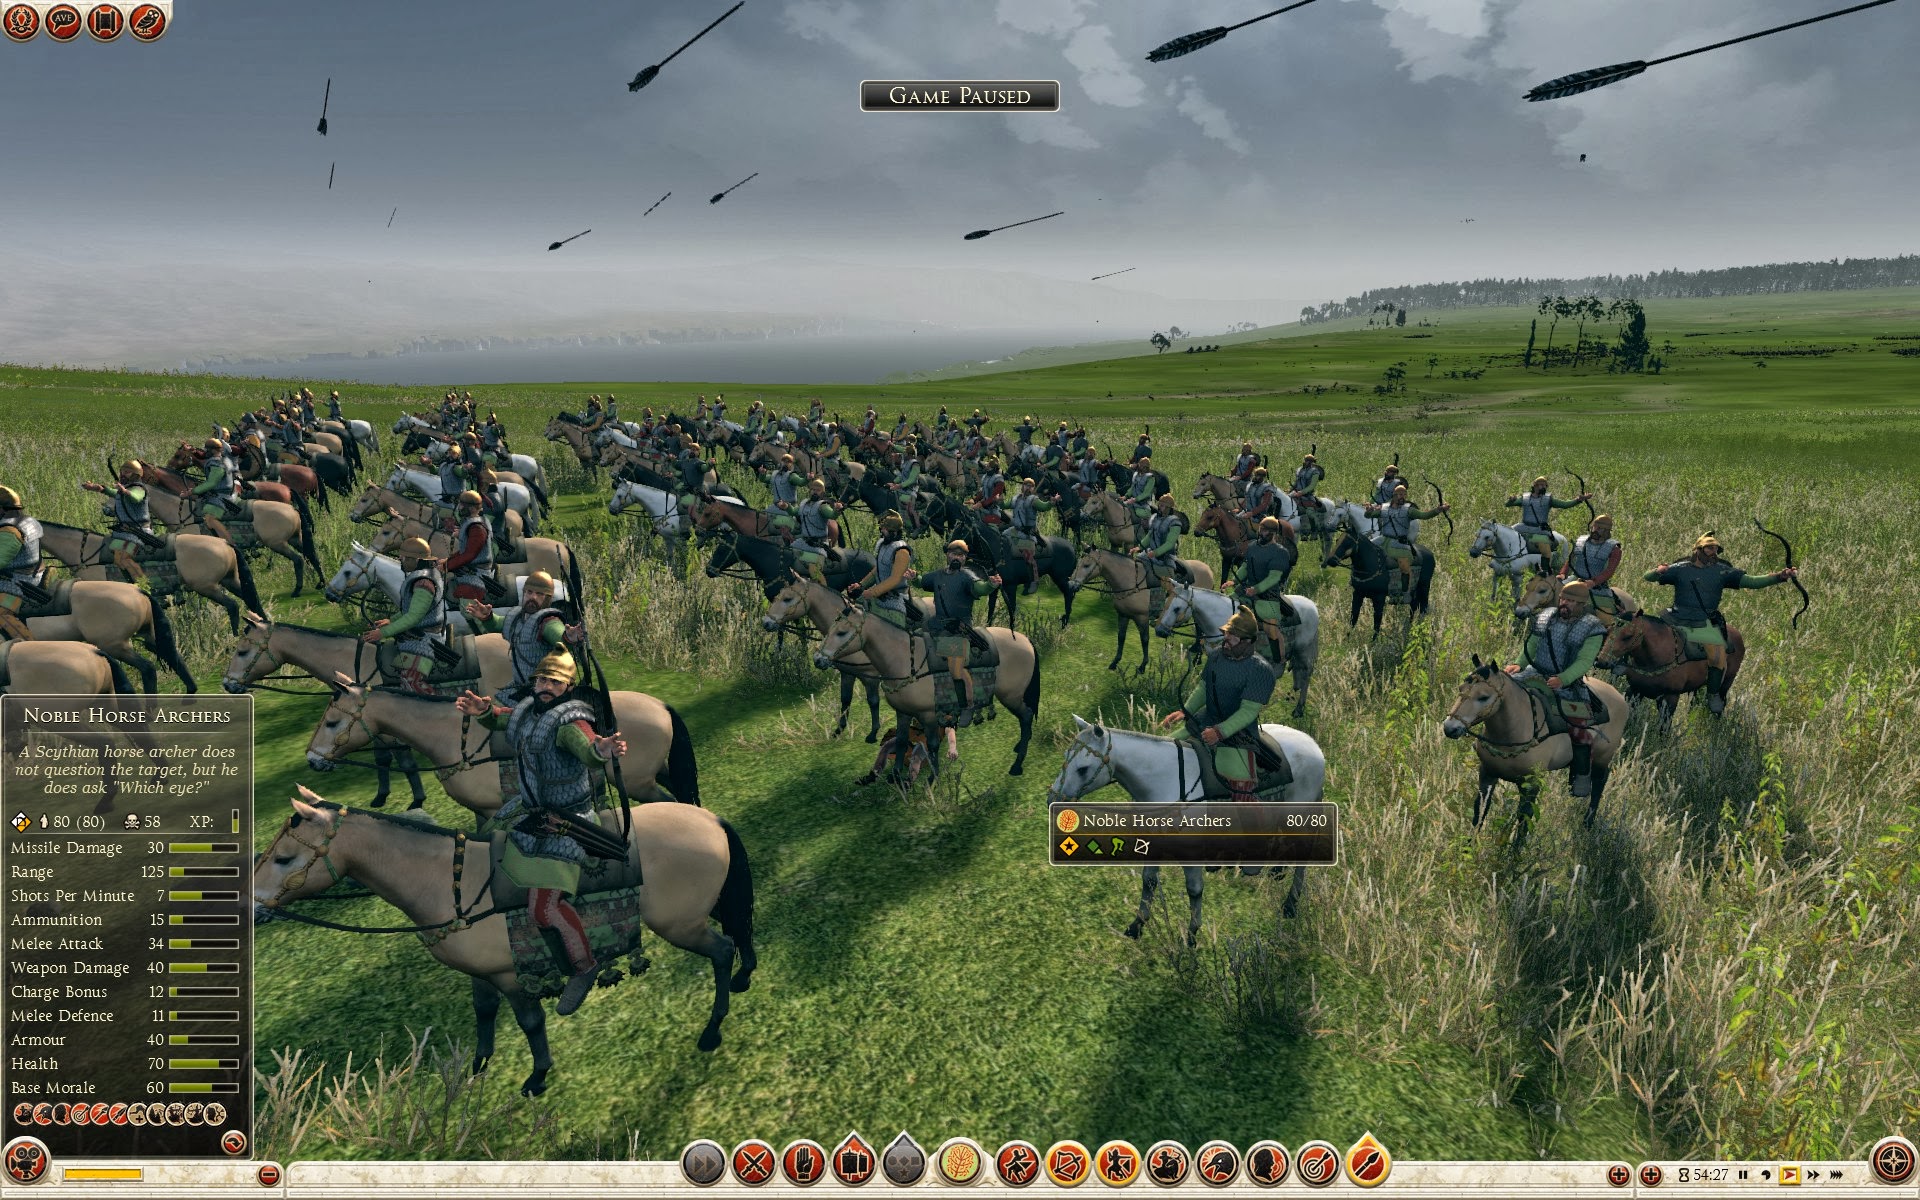 Noble Horse Archers